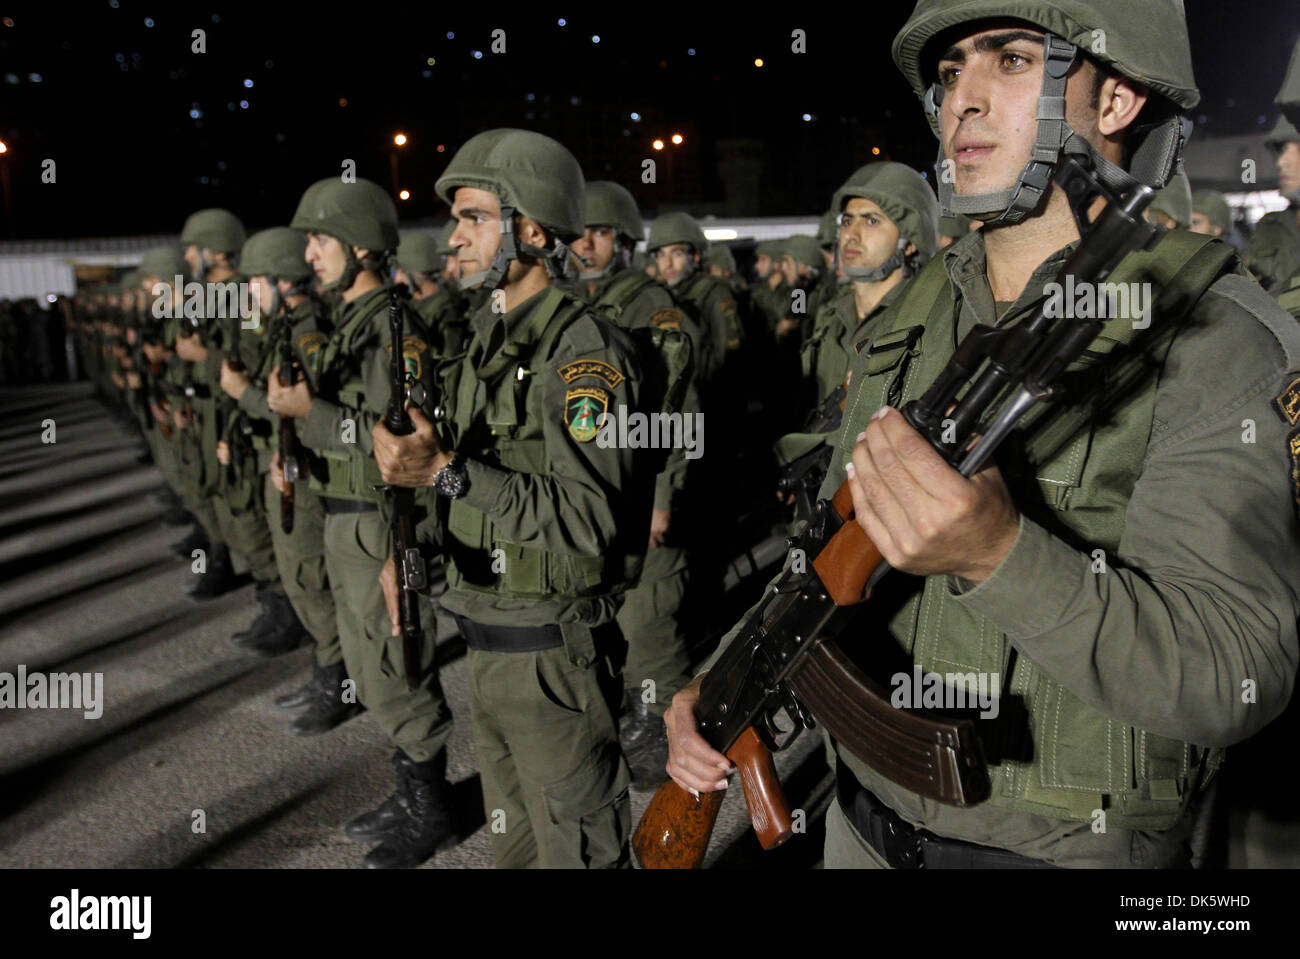 (131203) -- de Naplusa, Diciembre 3, 2013 (Xinhua) -- Los miembros de las fuerzas de seguridad palestinas participar en un rallye de militares en la Ribera Occidental ciudad de Naplusa, el 2 de diciembre de 2013. Los funcionarios dijeron que cientos de palestinos han desplegado fuerzas en el distrito de Nablus, en el norte de la Ribera Occidental, reforzando la presencia de seguridad y persiguiendo quería pistoleros palestinos. (Xinhua/Ayman Nobani) Foto de stock